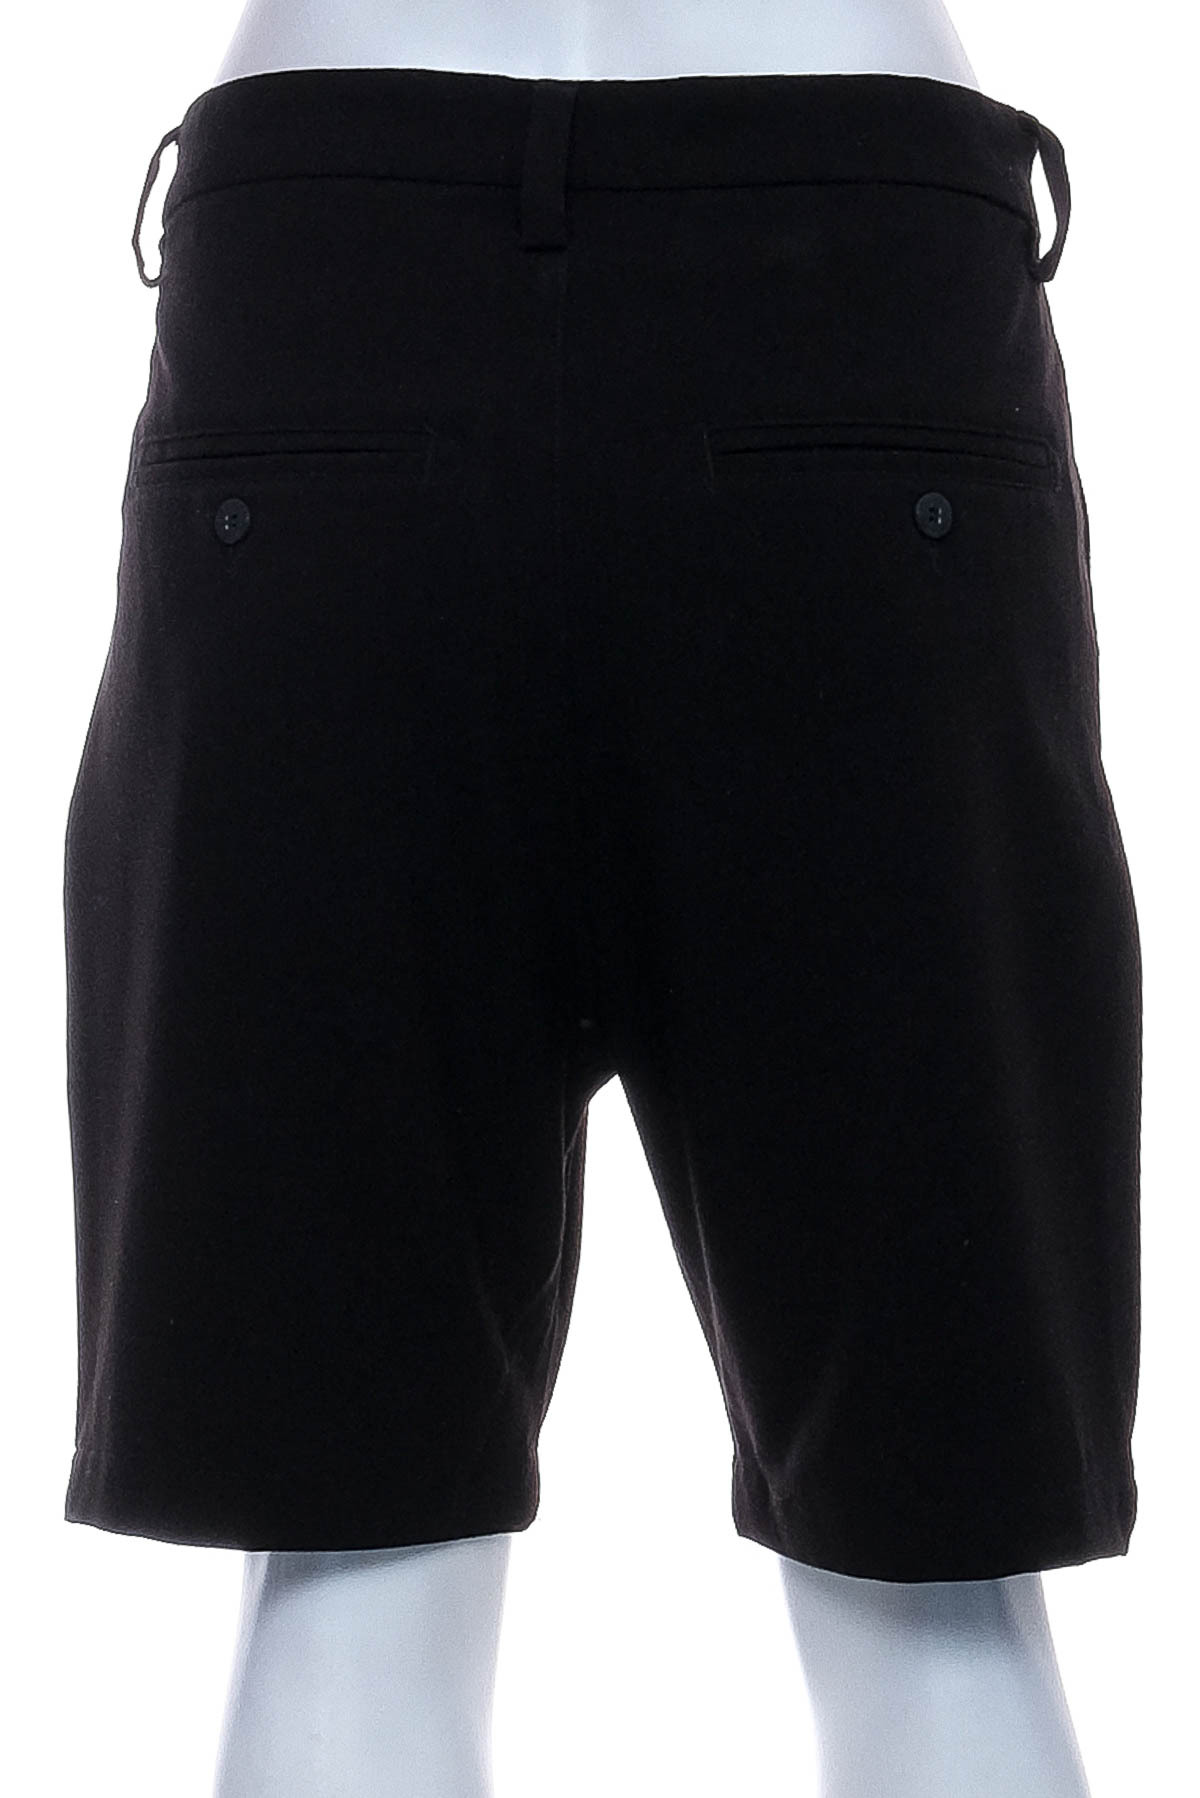 Men's shorts - Pull & Bear - 1